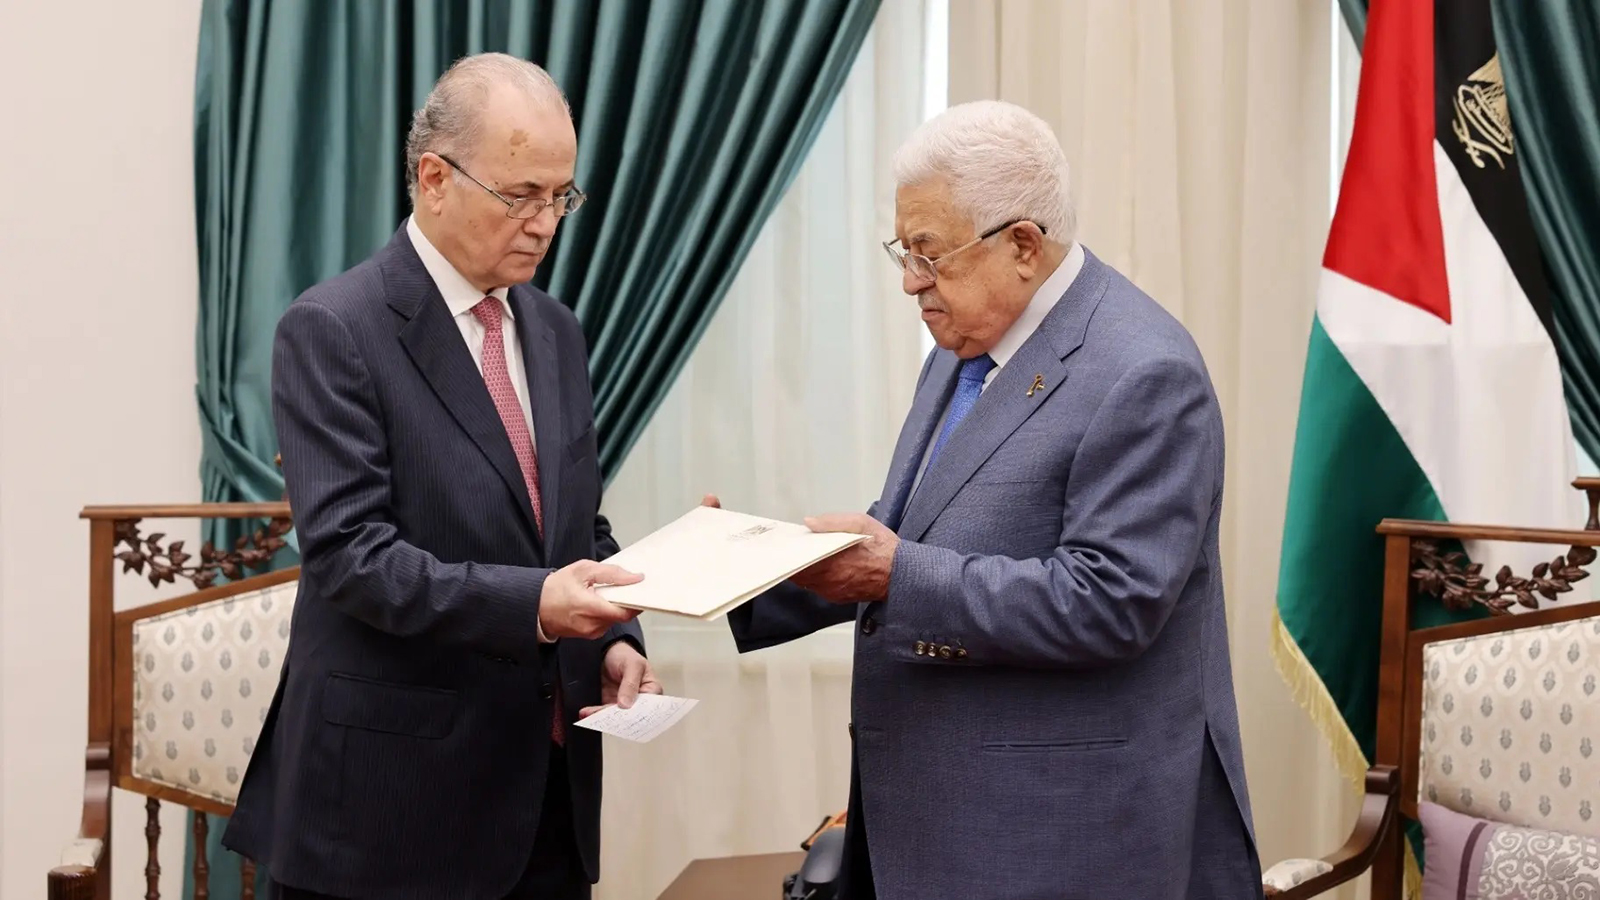 الرئيس الفلسطيني يمنح الثقة للحكومة الجديدة ويعتمد تشكيلتها